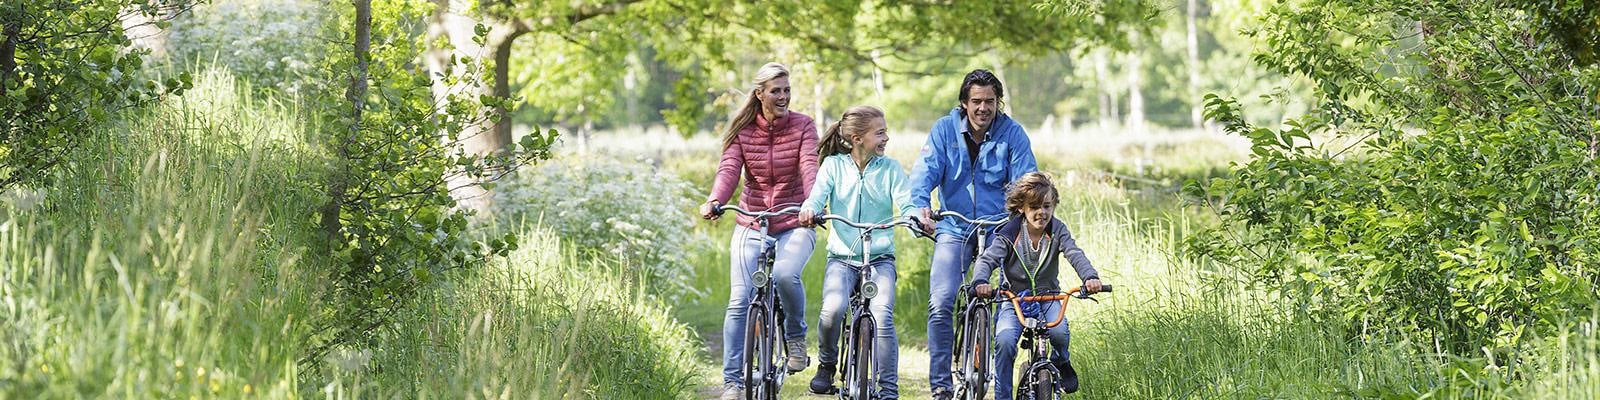 2 vélos Gazelle gratuits pendant votre séjour pour la réservation d'un cottage Premium à De Vossemeren, Erperheide, Les Ardennes ou Park de Haan